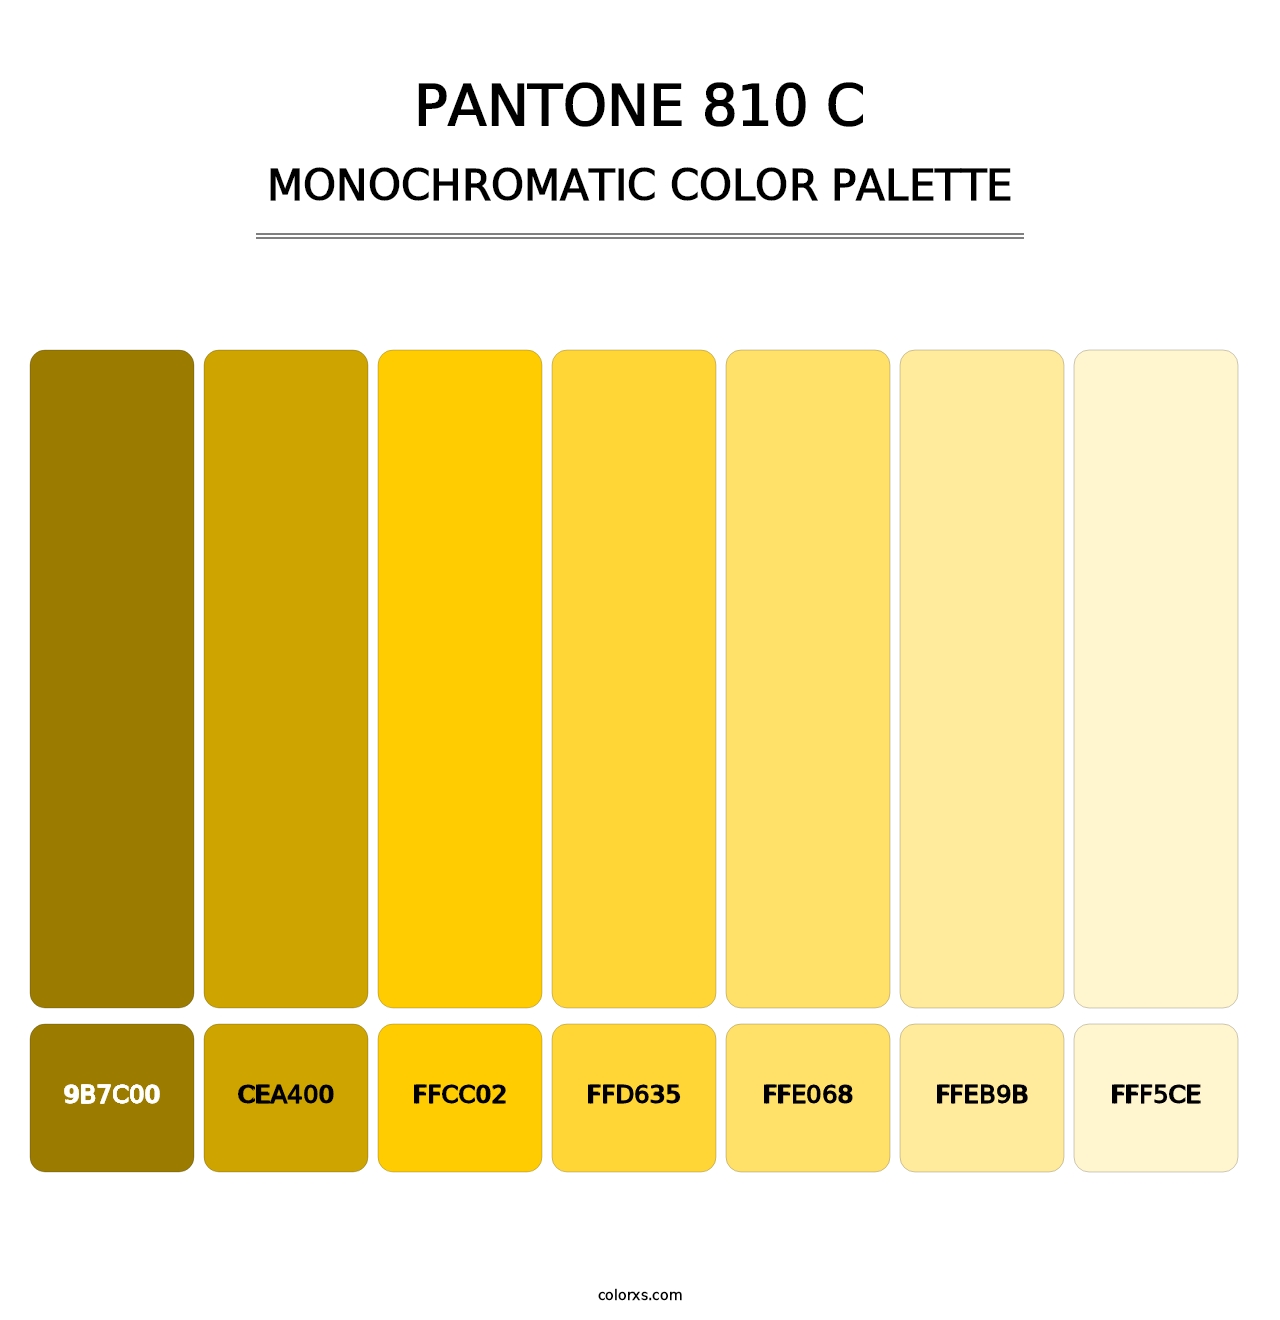 PANTONE 810 C - Monochromatic Color Palette